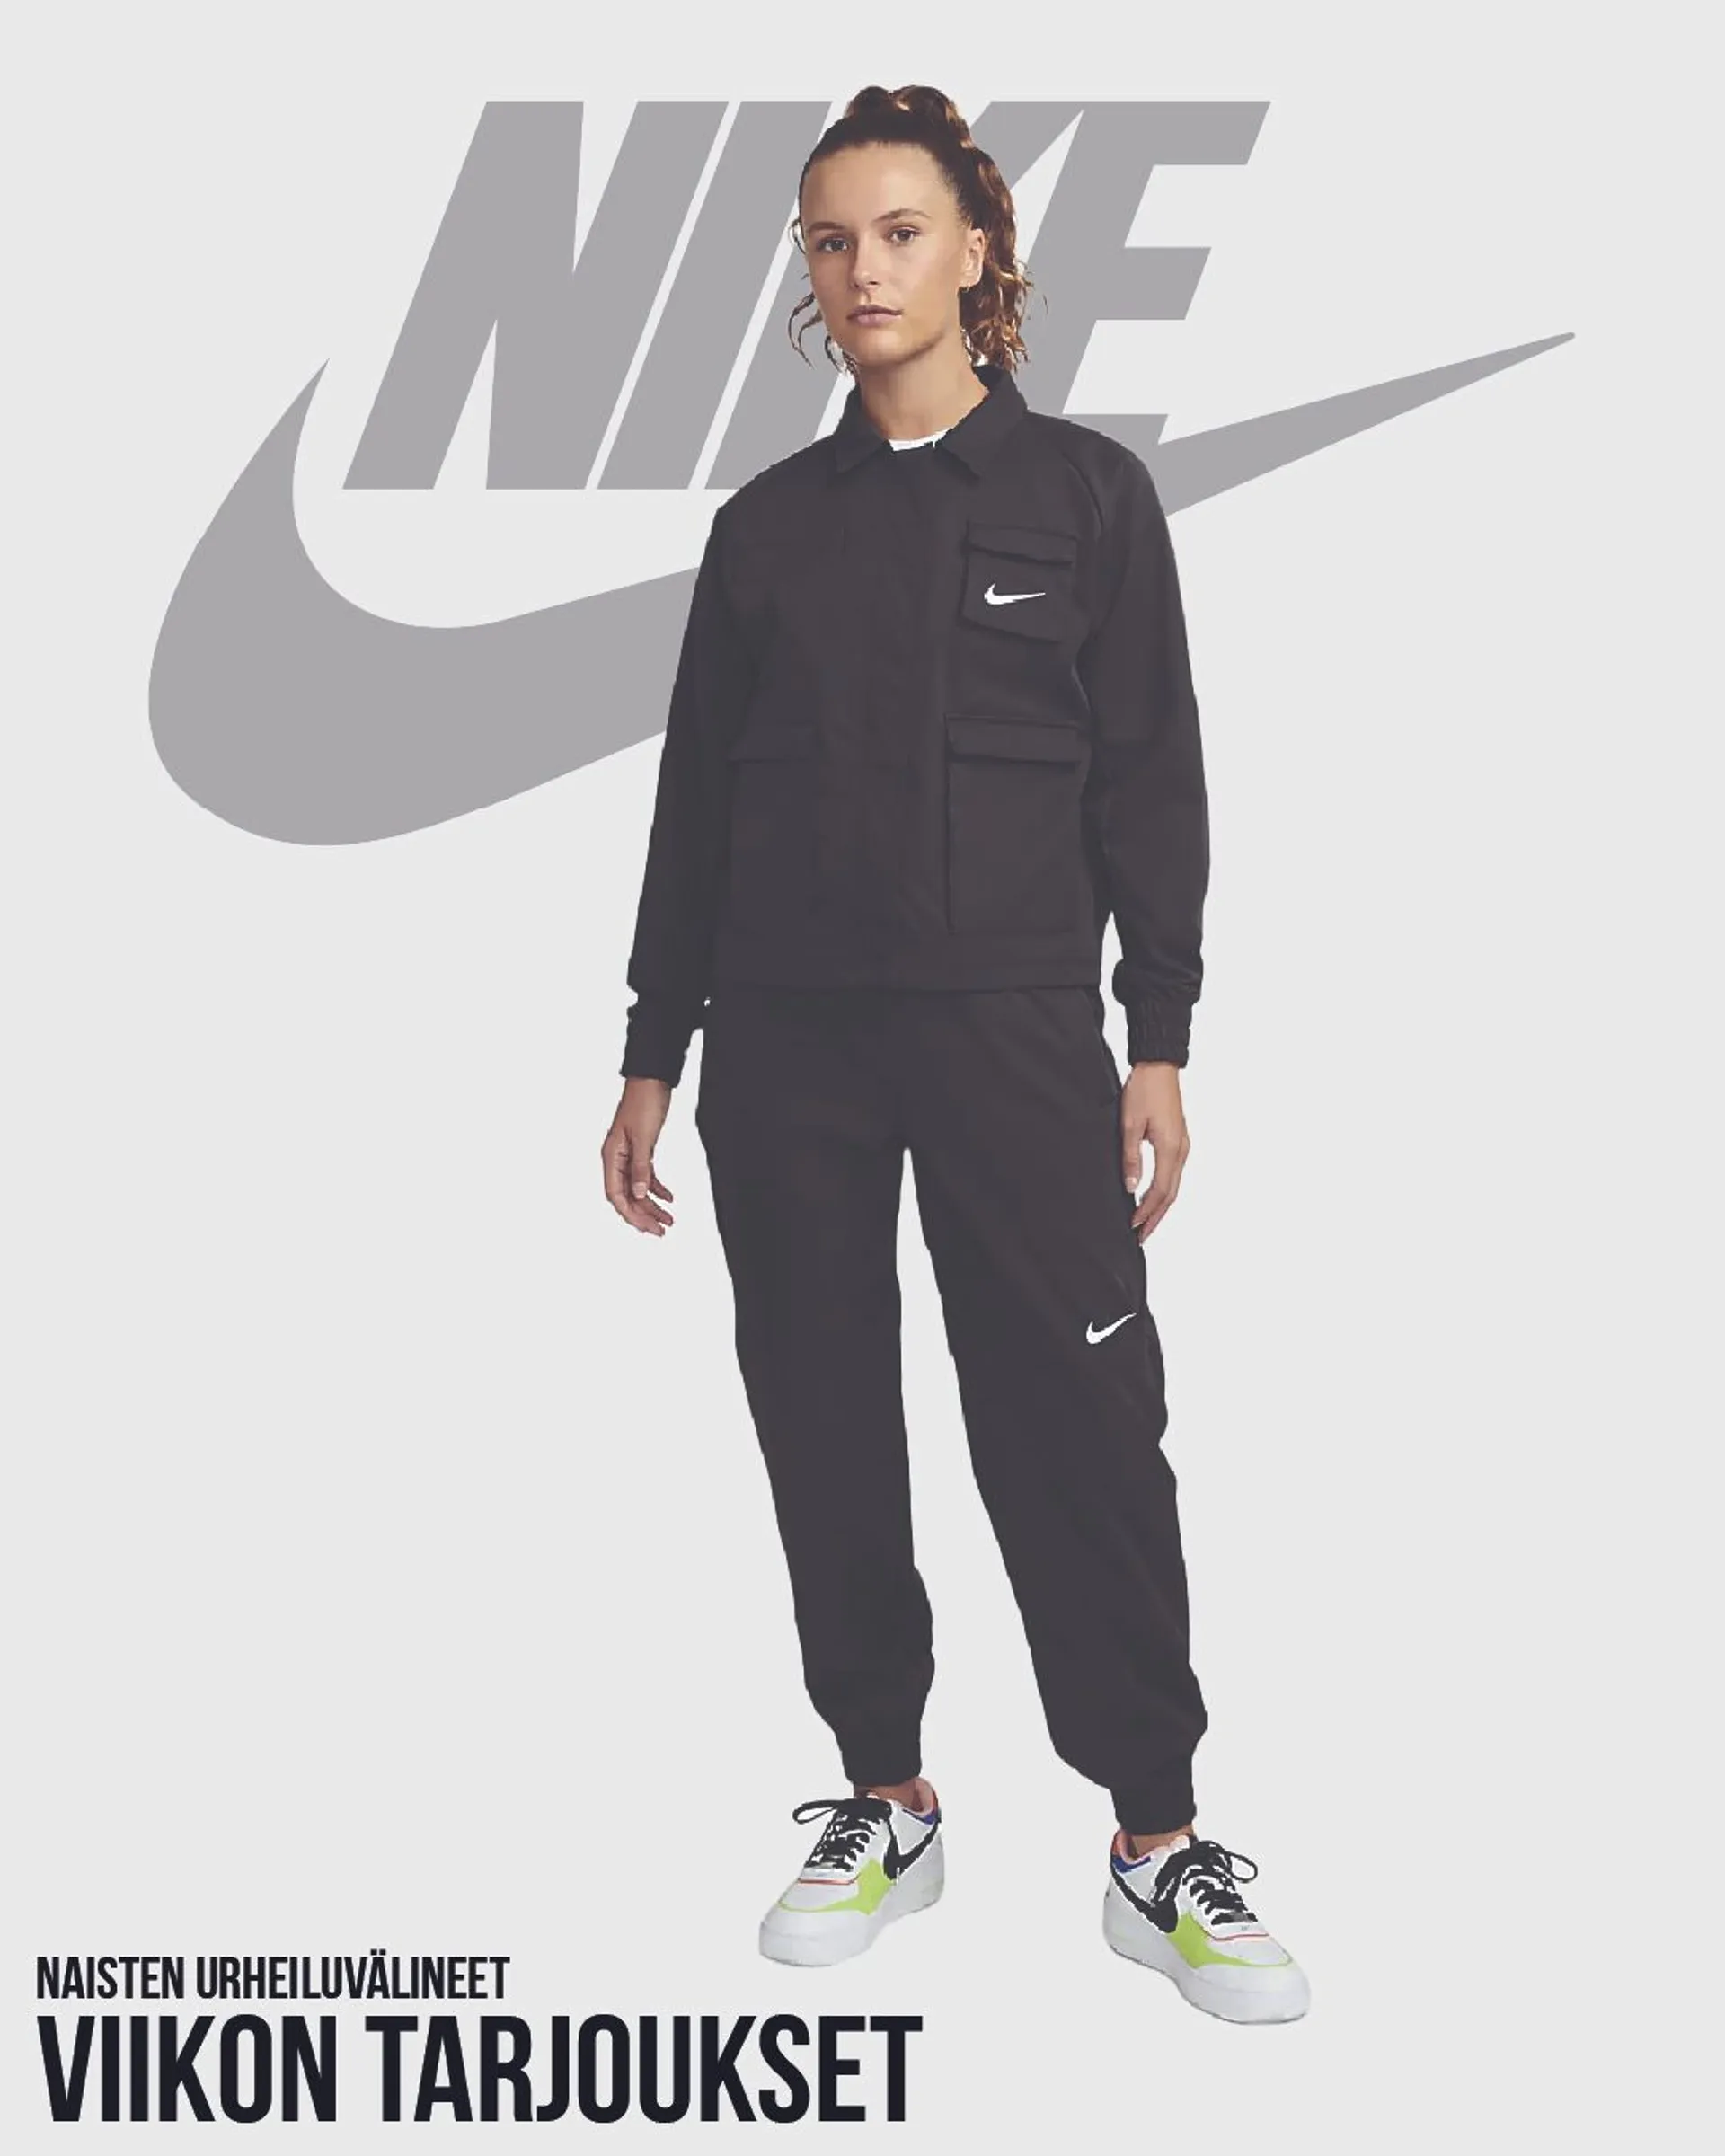 Nike - Naisten urheiluvälineet voimassa alkaen 4. toukokuuta - 9. toukokuuta 2024 - Tarjouslehti sivu 1